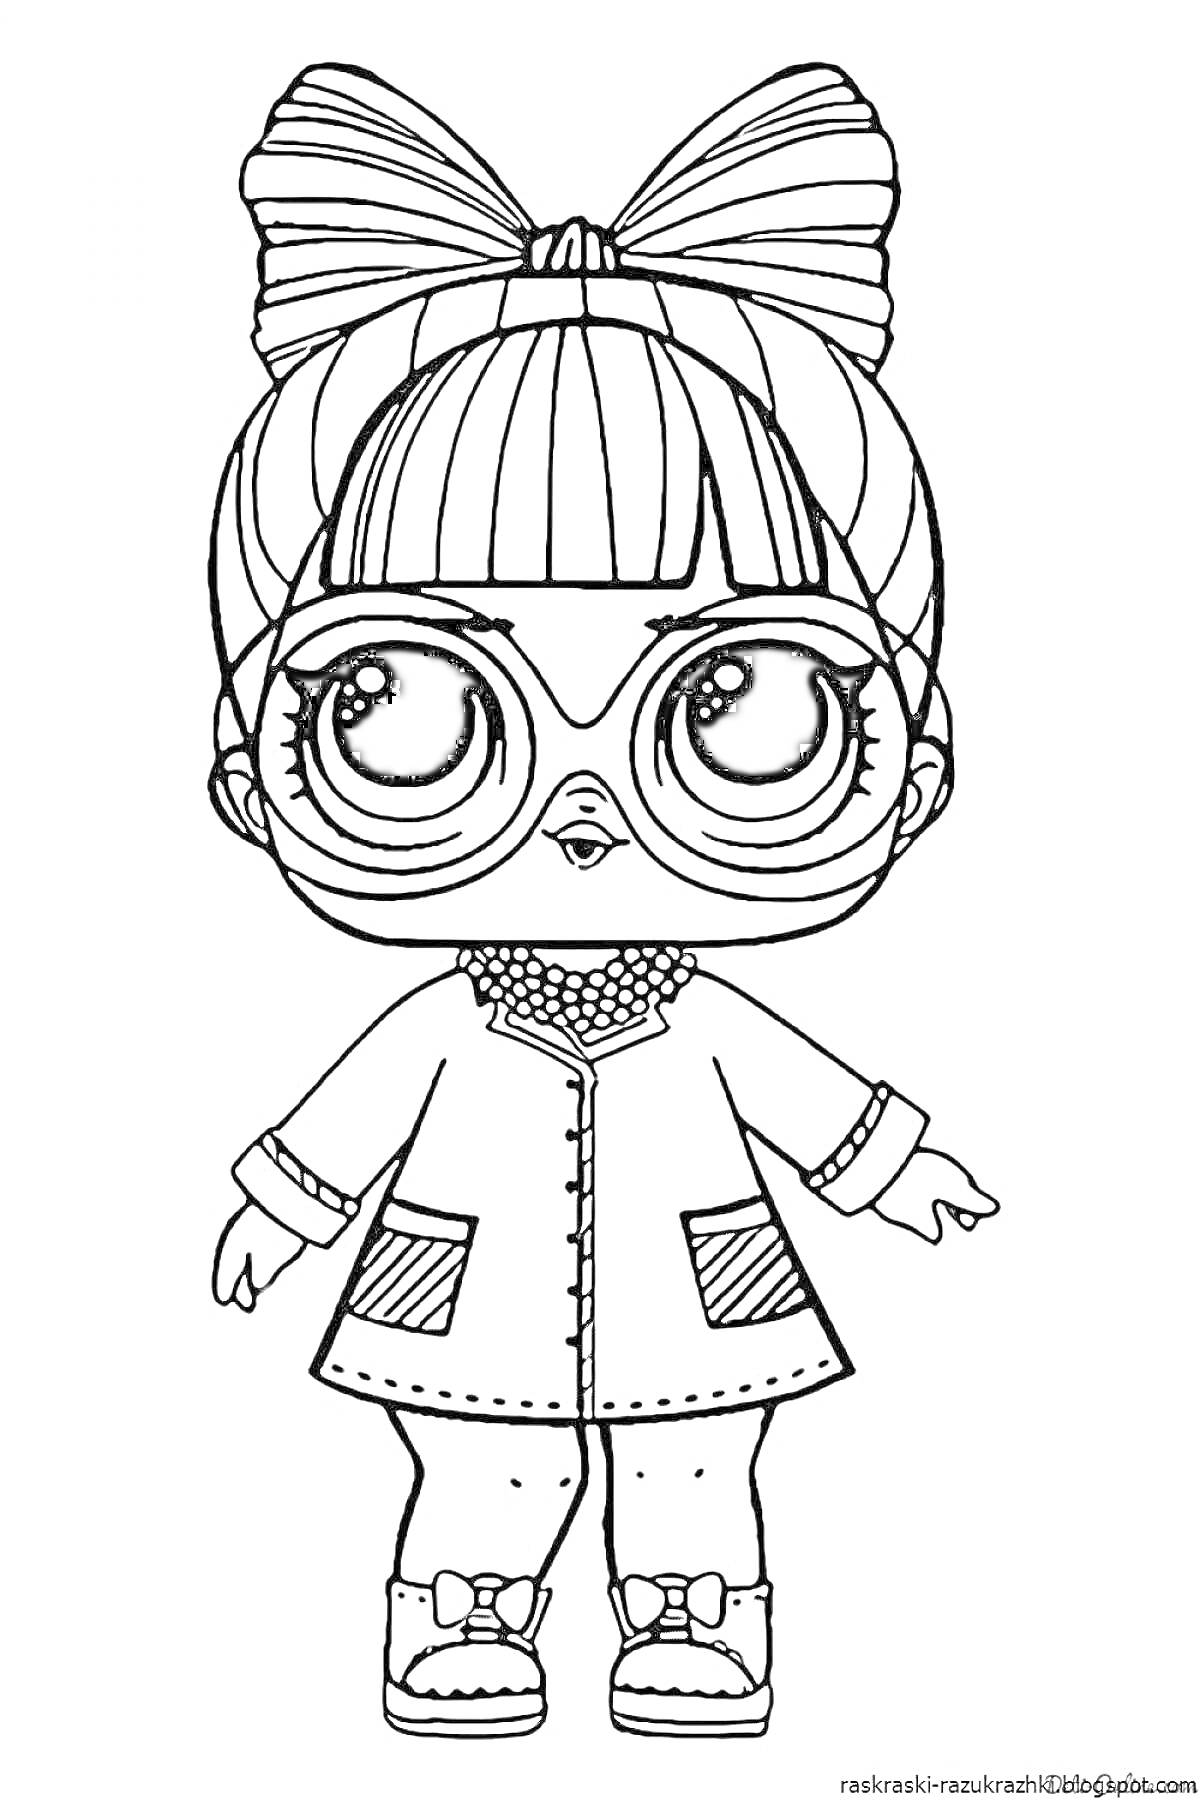 Раскраска Кукла LOL с большими глазами, в очках, с бантиком на голове, в длинной куртке с карманами и ботинках